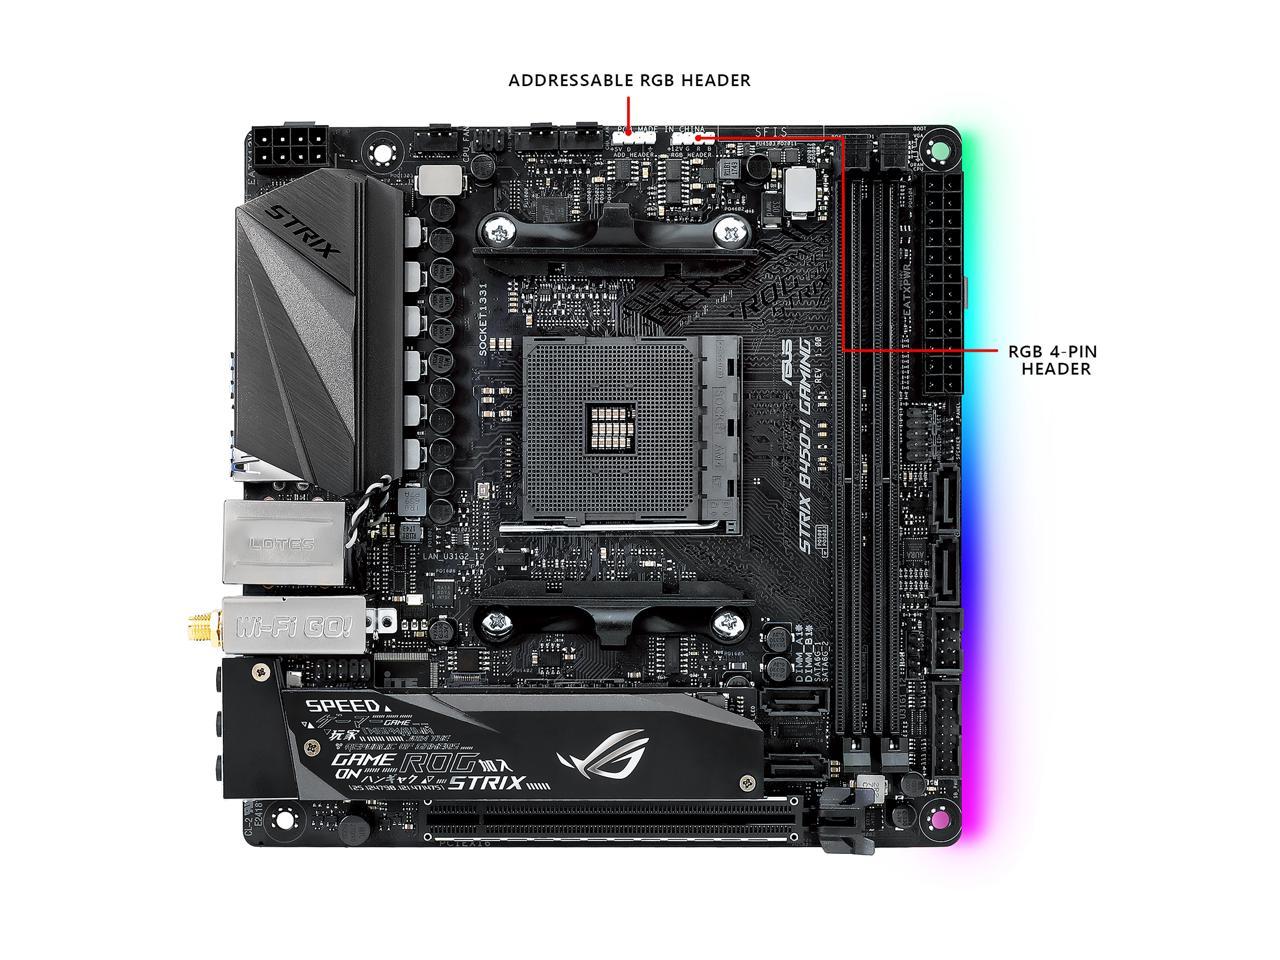 ASUS ROG STRIX B450-I GAMING AM4 AMD B450 SATA 6Gb/s USB 3.1 HDMI Mini ITX AMD Motherboard